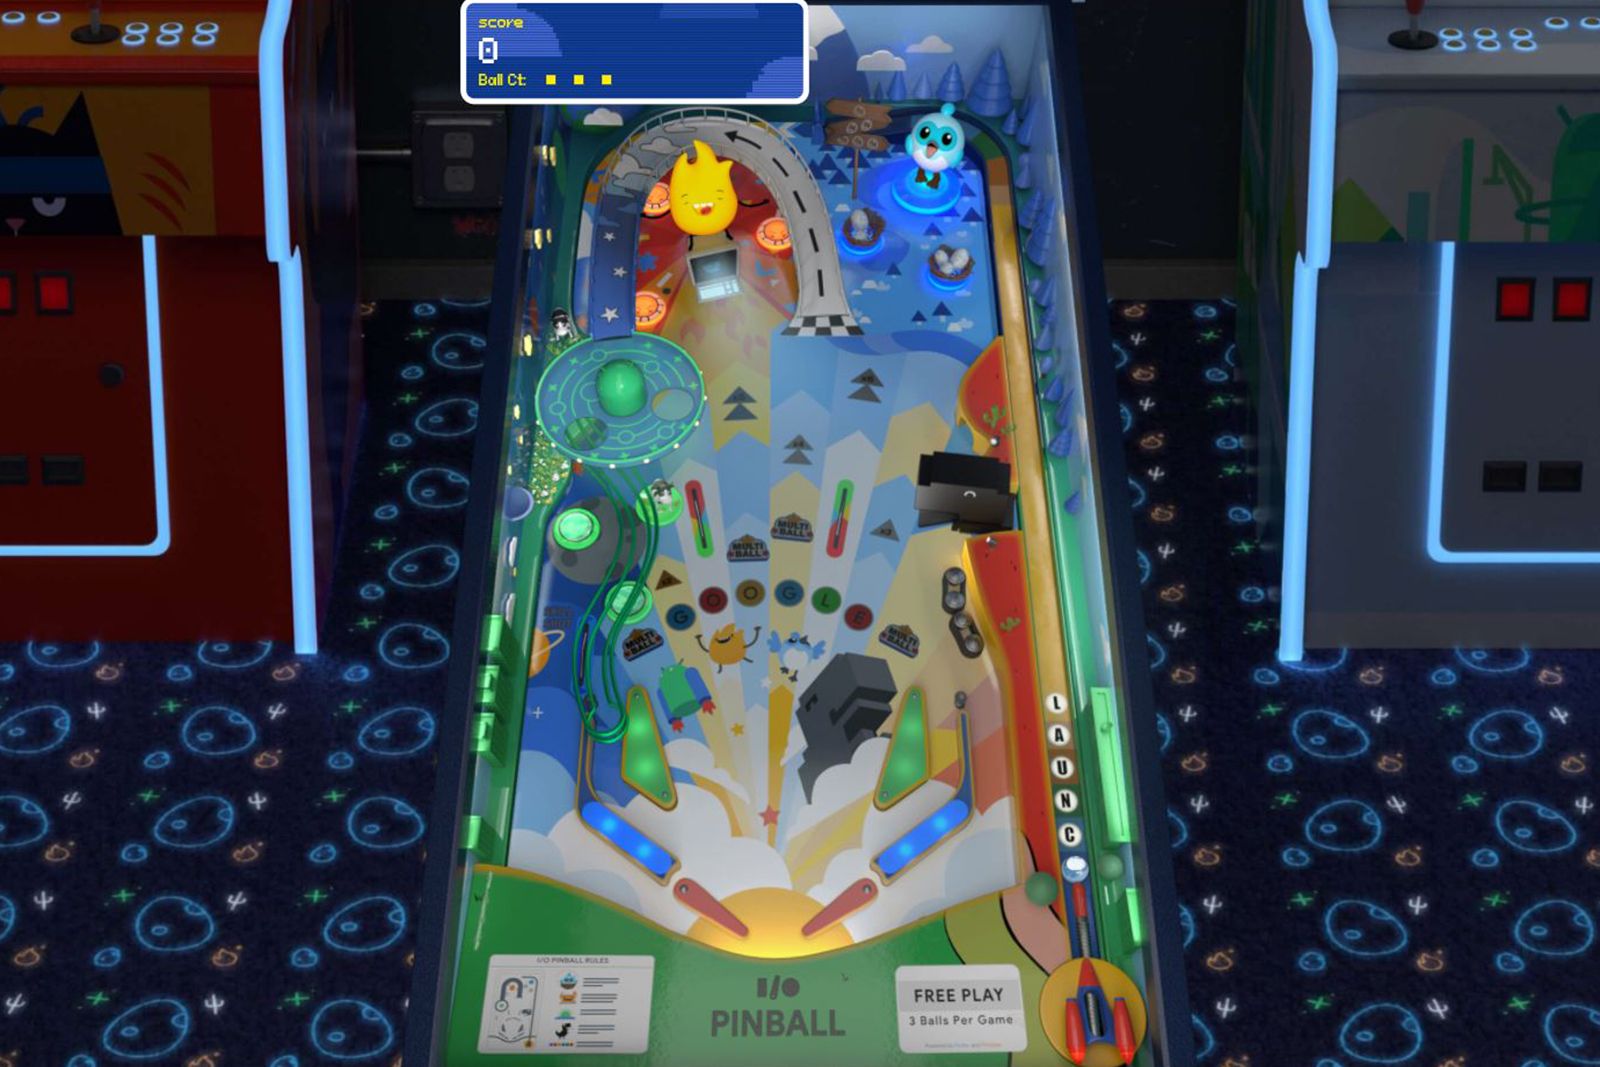 How to play Google’s free I/O pinball game photo 1